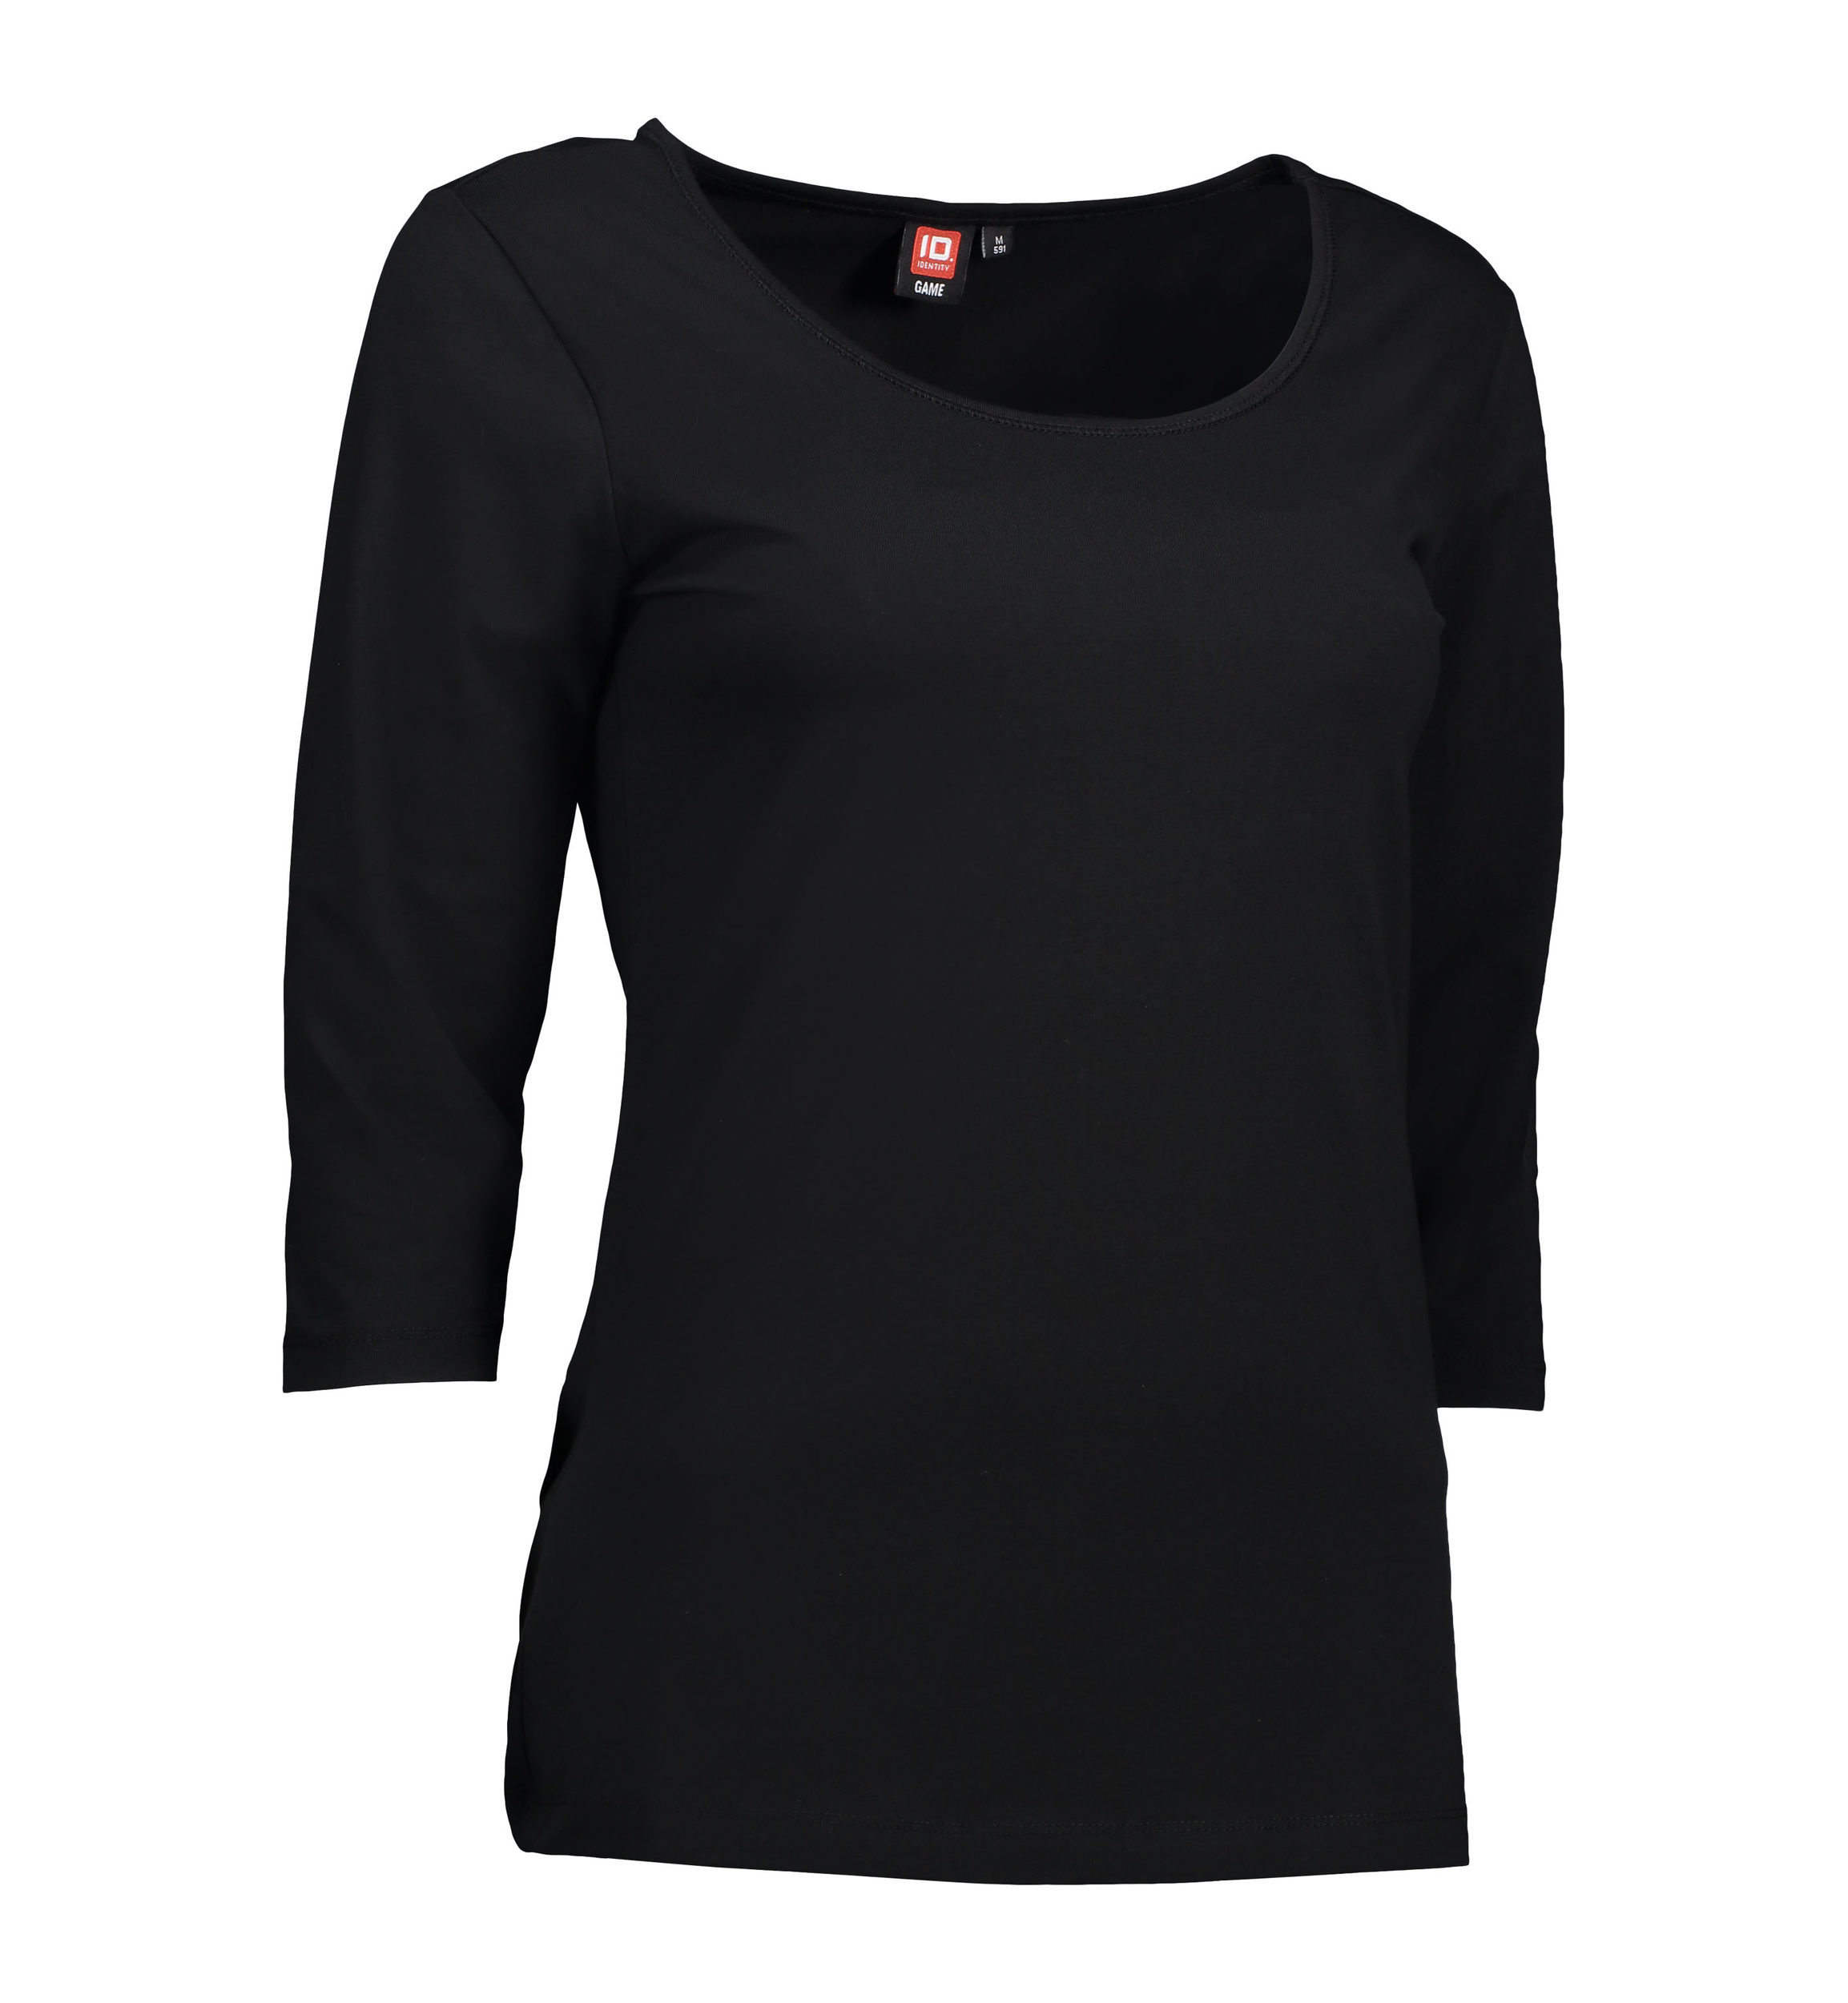 Se 3/4-ærmet dame t-shirt i sort - XS hos Sygeplejebutikken.dk